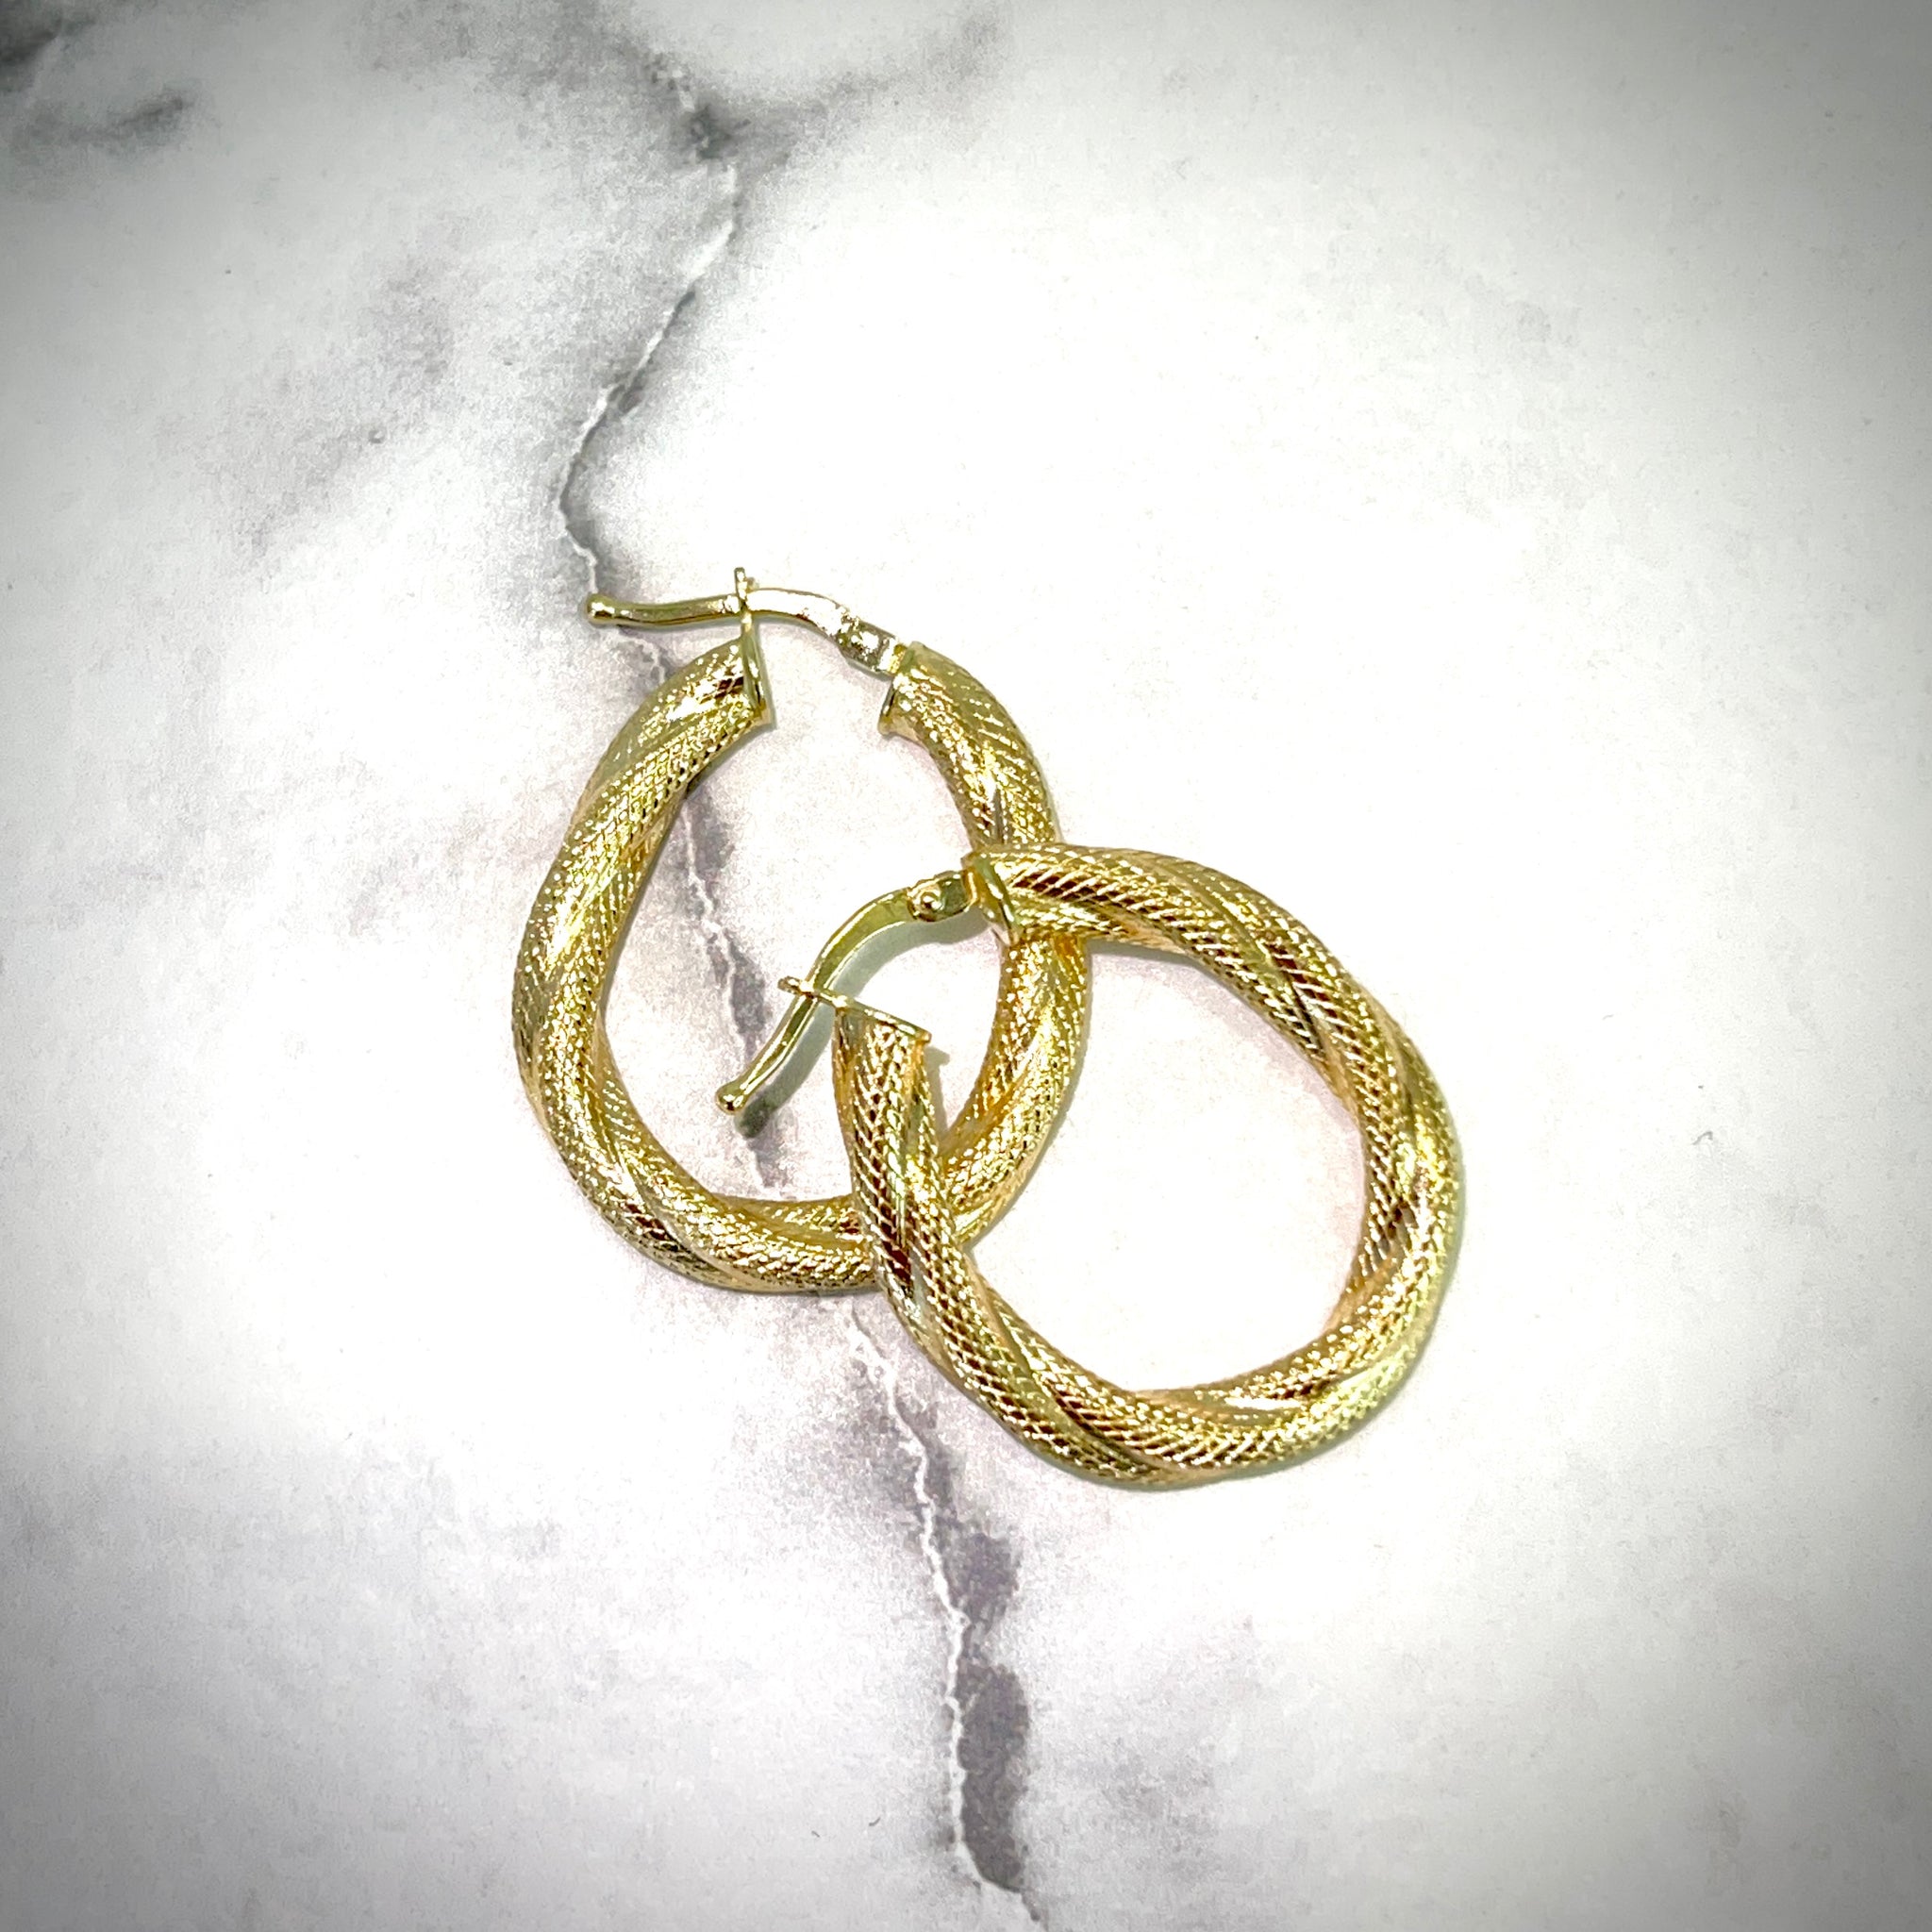 Rope Hoops Earrings - 18 carat gold